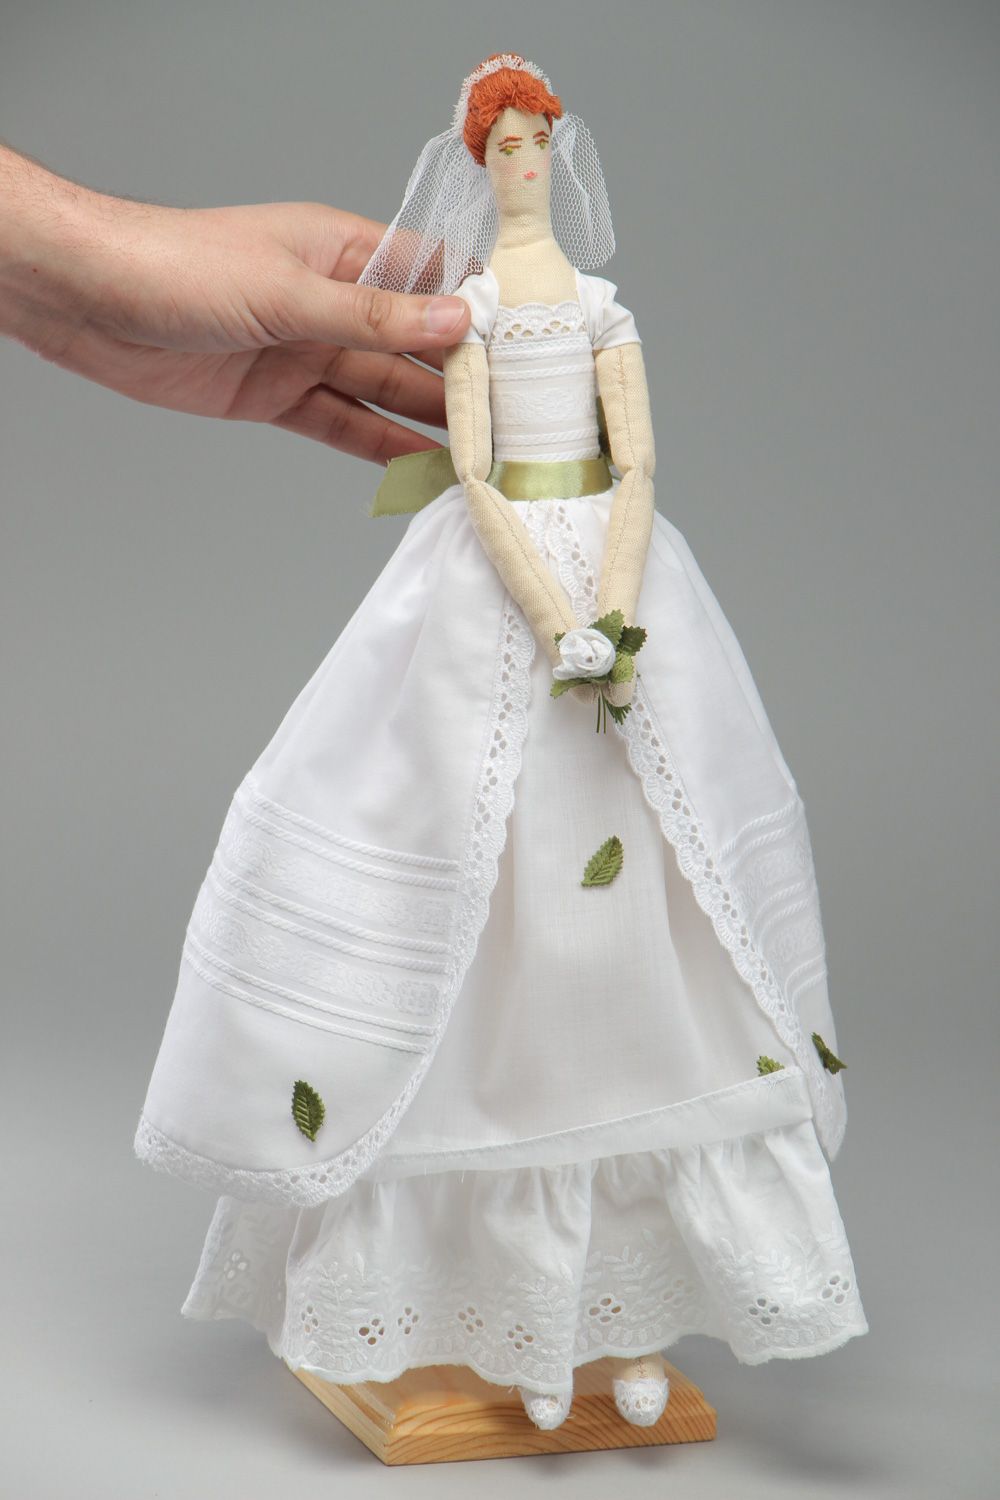 Grande poupée mariée en tissu faite main décorative originale cadeau de mariage photo 4